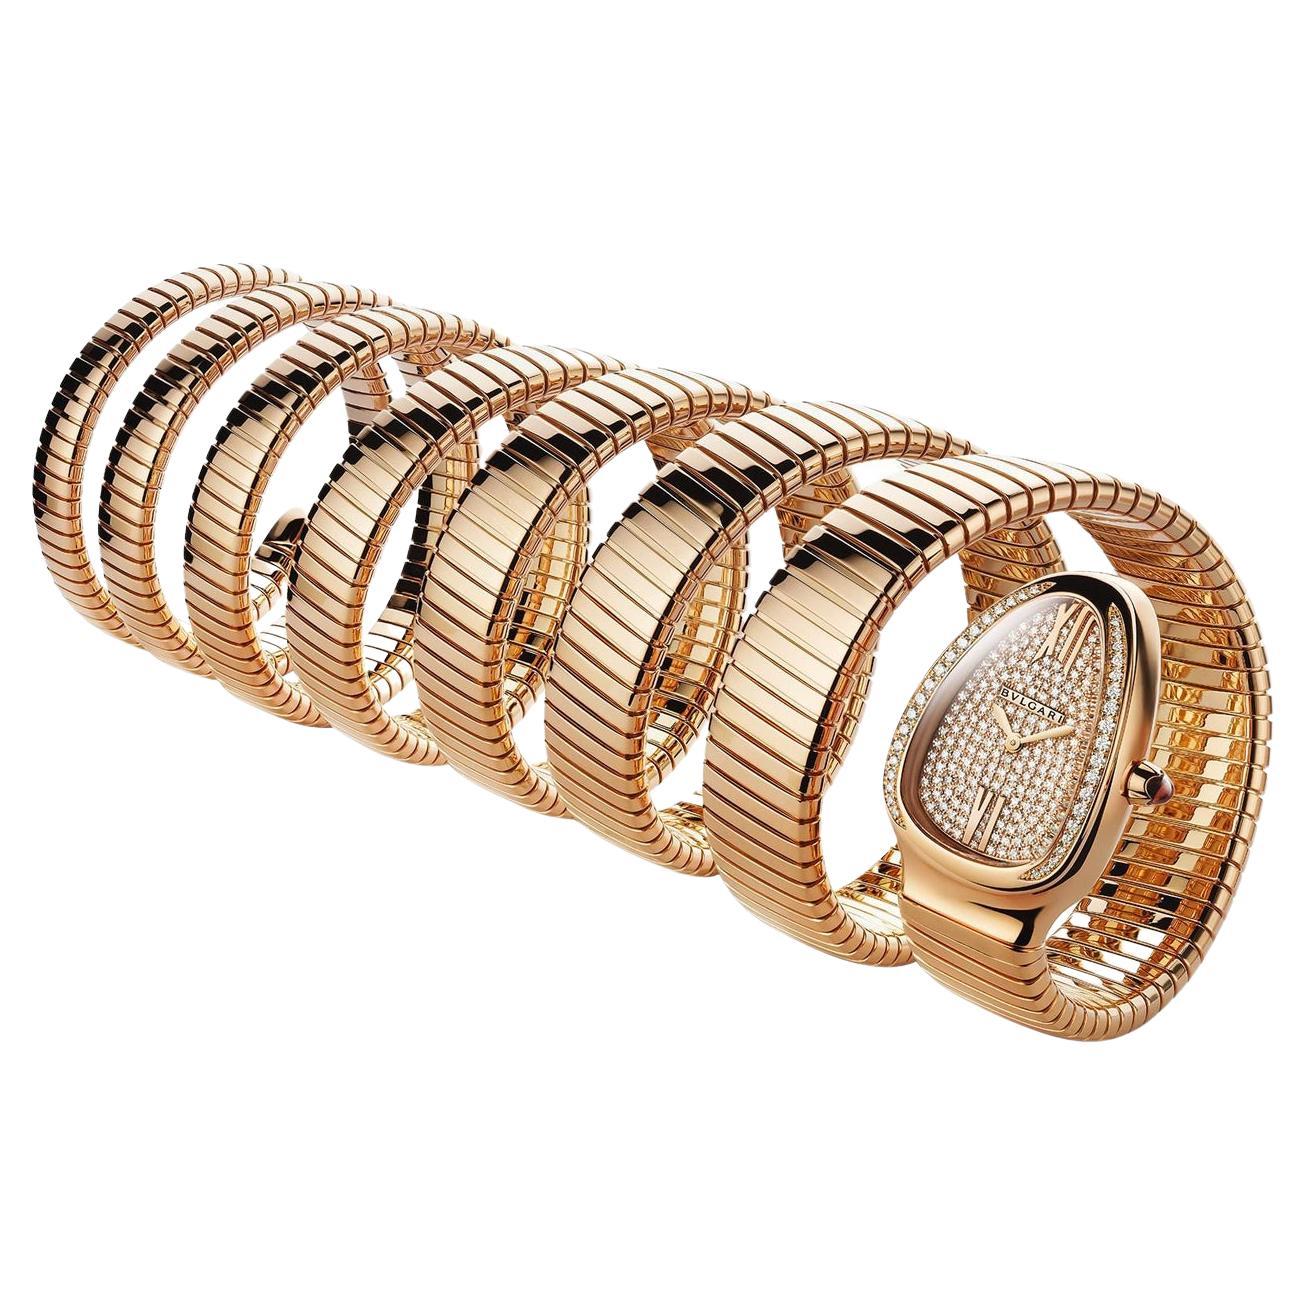 Reloj Serpenti Bulgari de oro rosa de 18 quilates y 7 rodillos